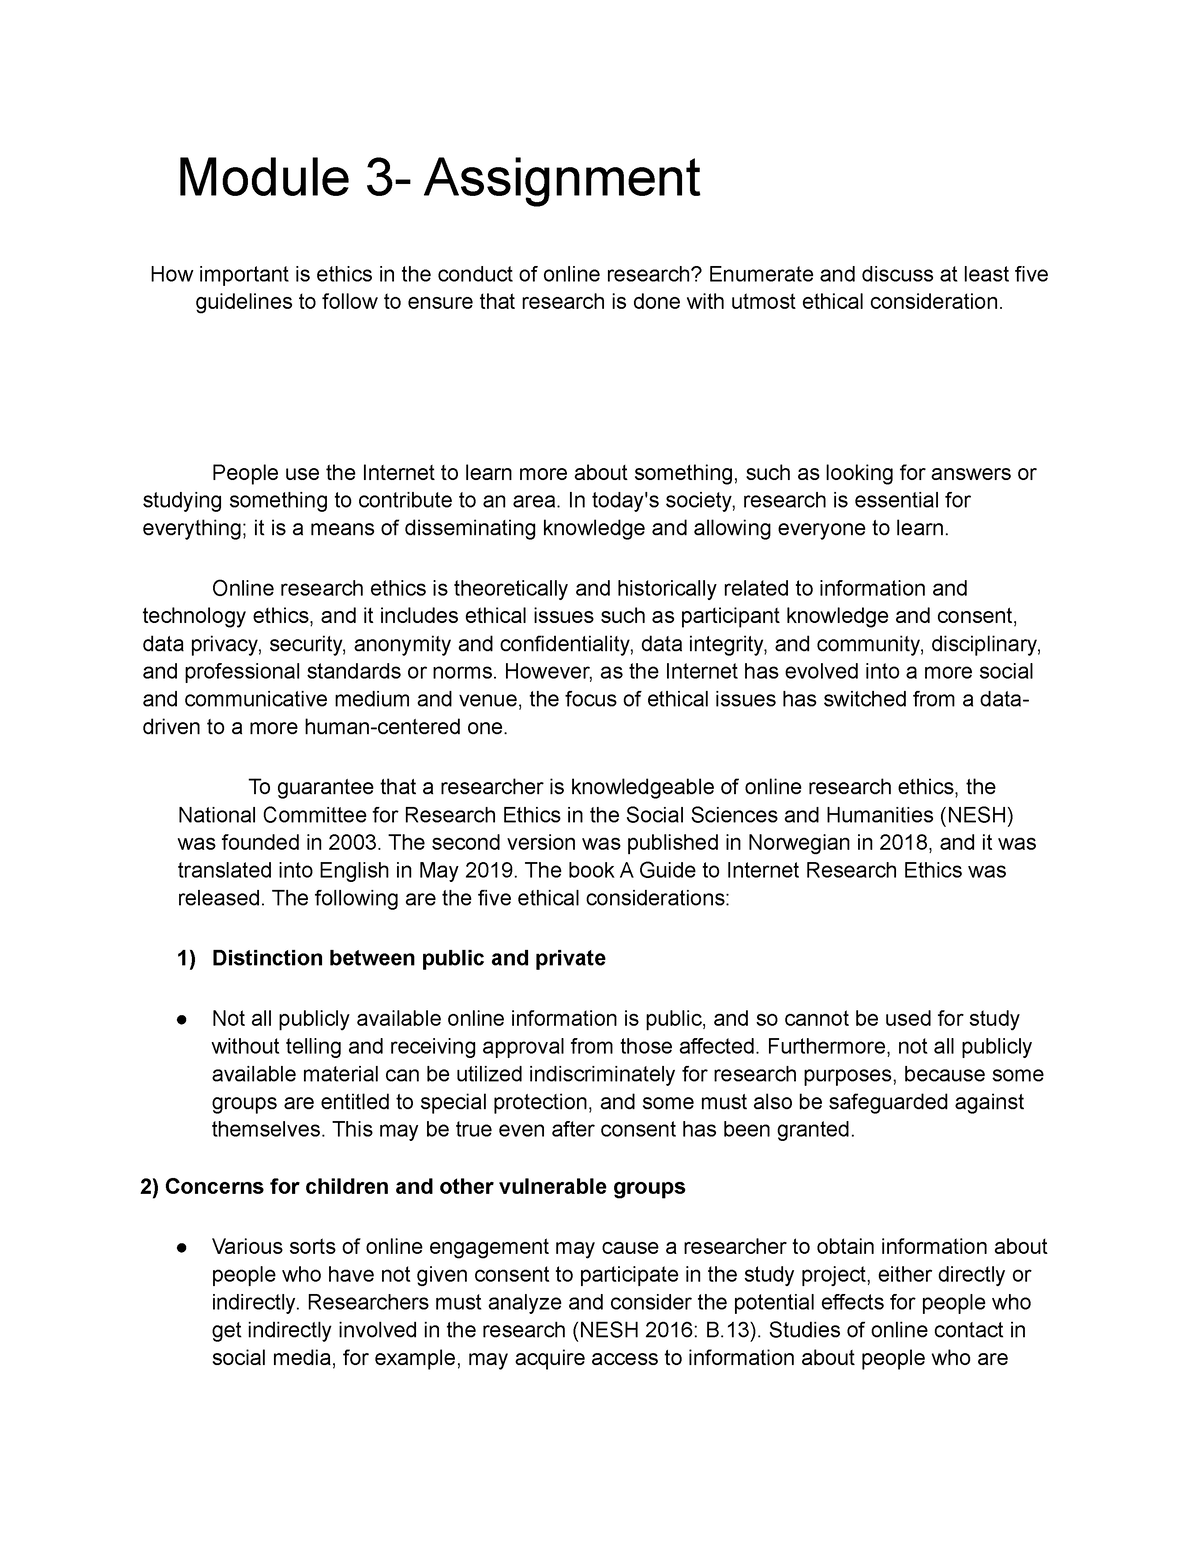 HCI-MOD-3- Assignment Valderama Shane - Module 3- Assignment How ...